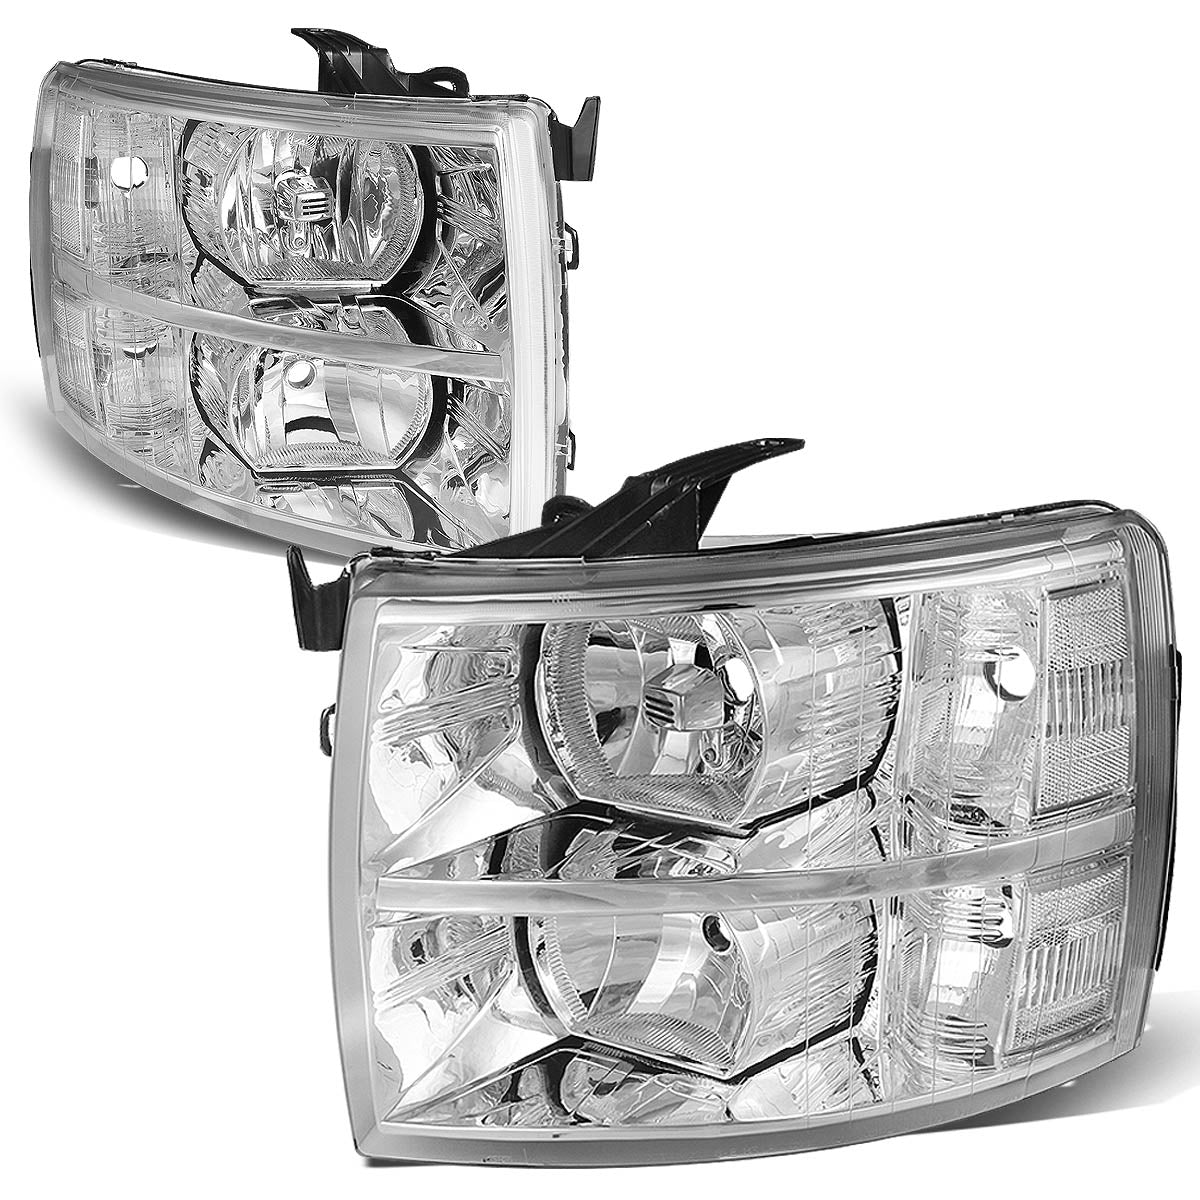 Factory Style Headlights <br>07-13 Chevy Silverado 1500, 07-14 2500 3500 HD